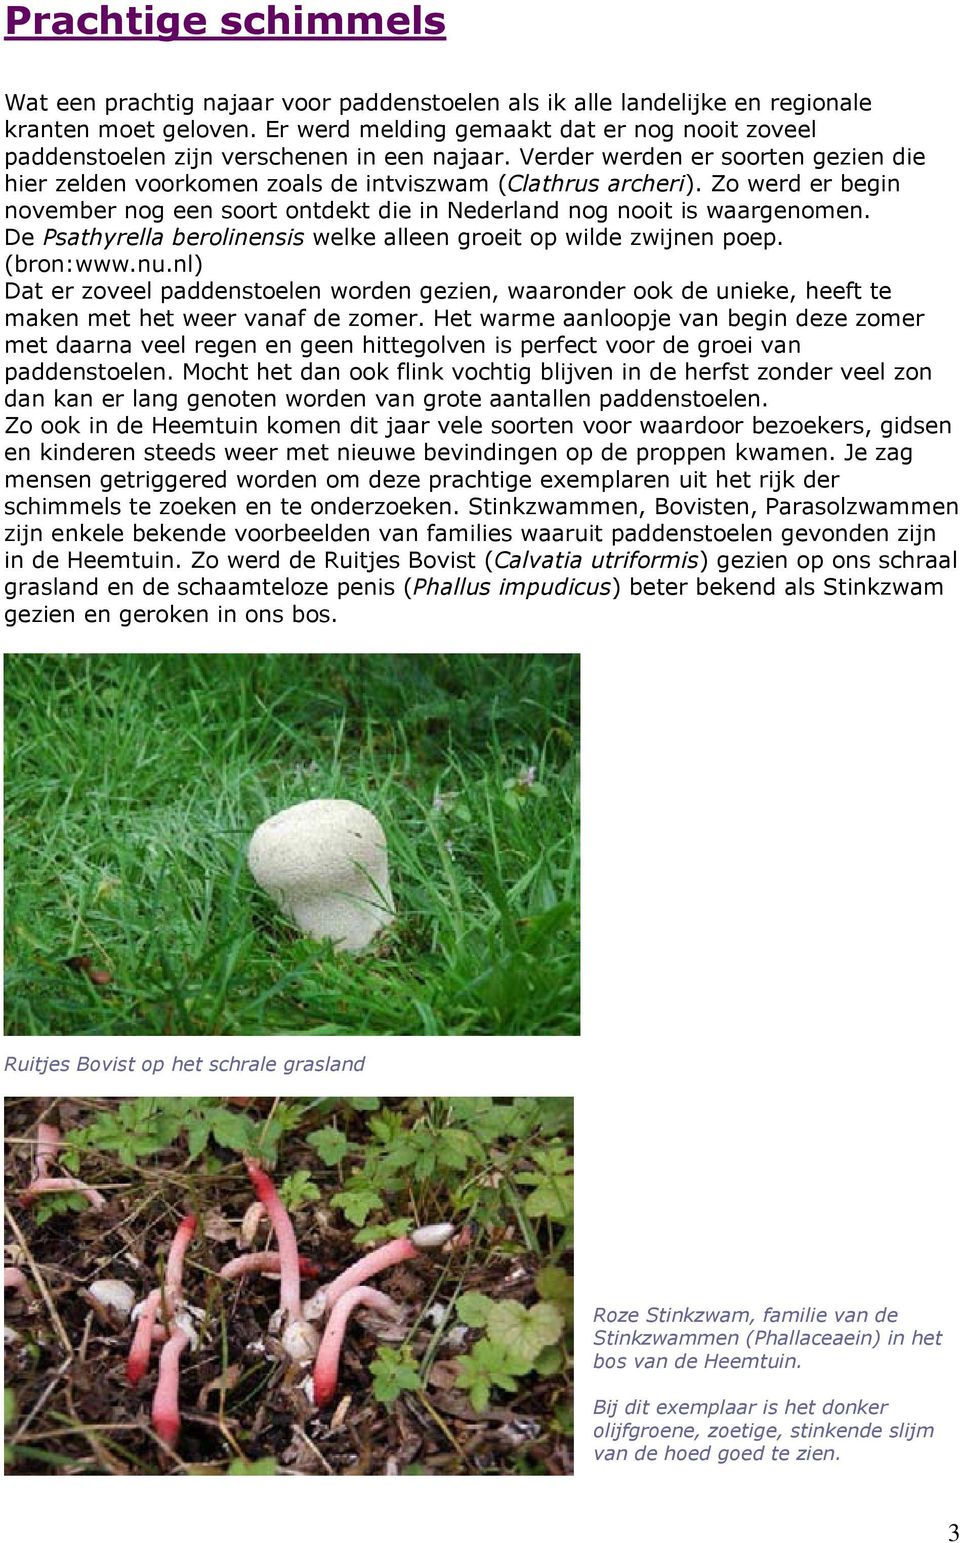 Zo werd er begin november nog een soort ontdekt die in Nederland nog nooit is waargenomen. De Psathyrella berolinensis welke alleen groeit op wilde zwijnen poep. (bron:www.nu.